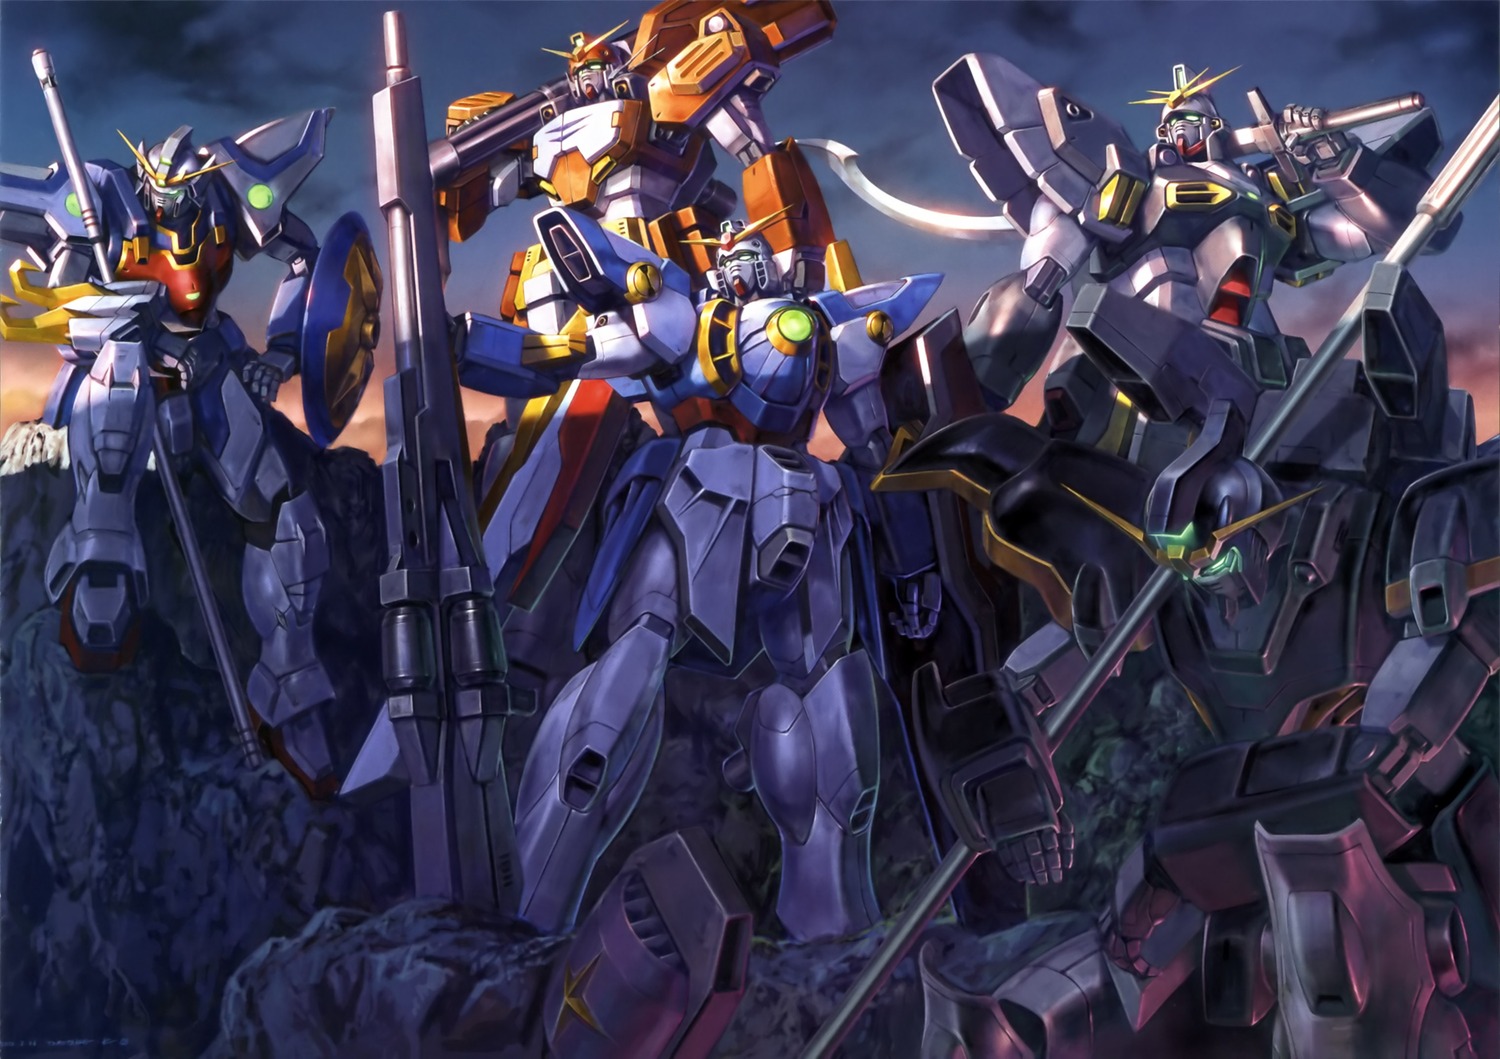 Wallpaper Zz Gundam Wallpaper Images, Photos, Reviews